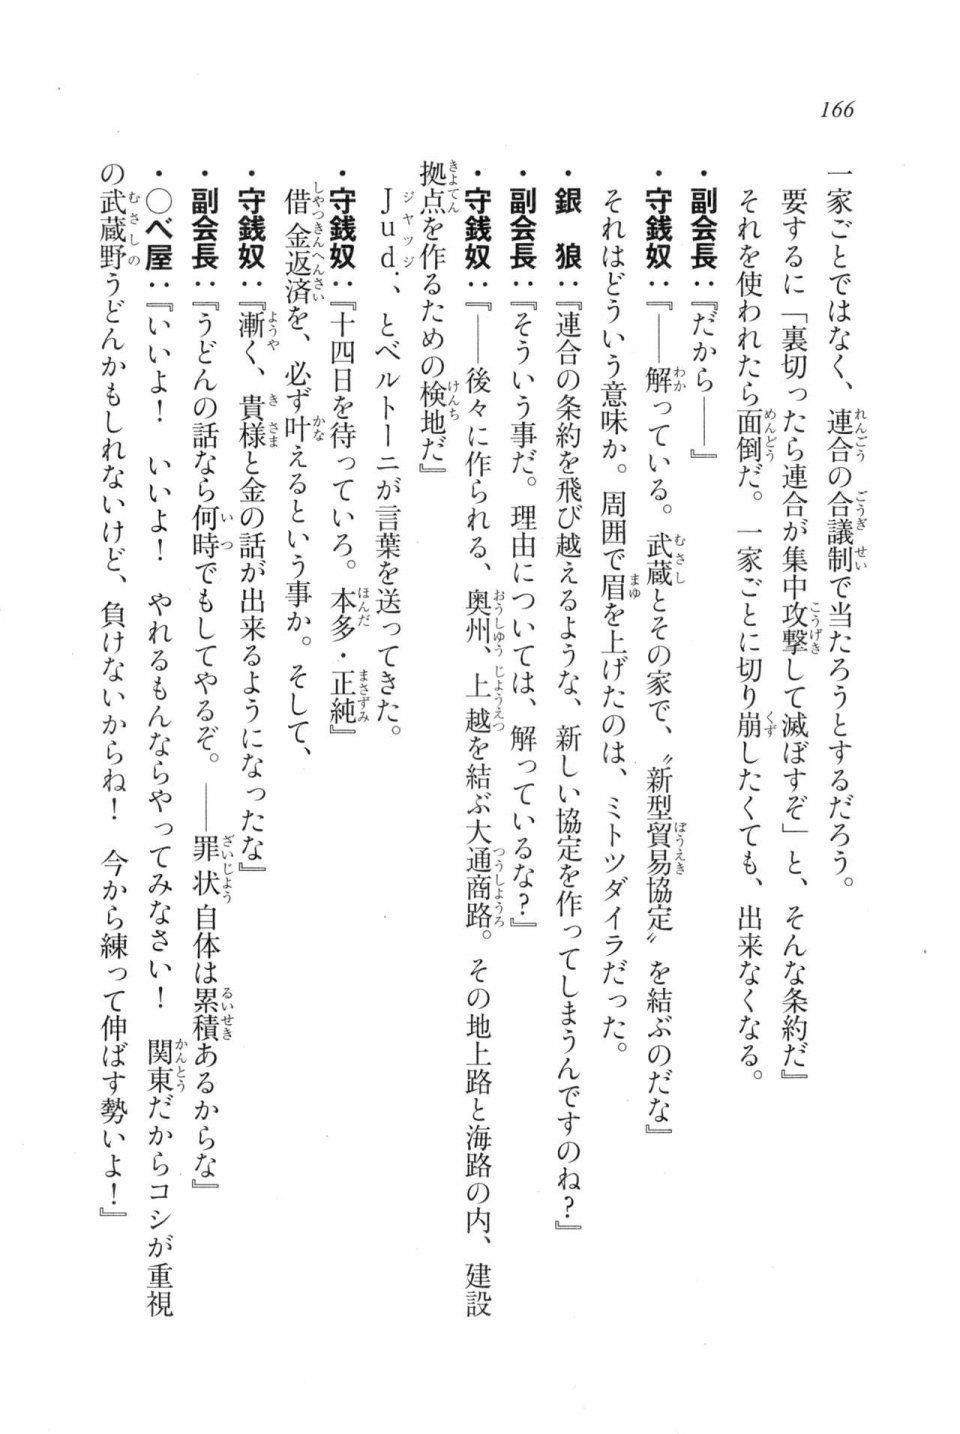 Kyoukai Senjou no Horizon LN Vol 20(8B) - Photo #166